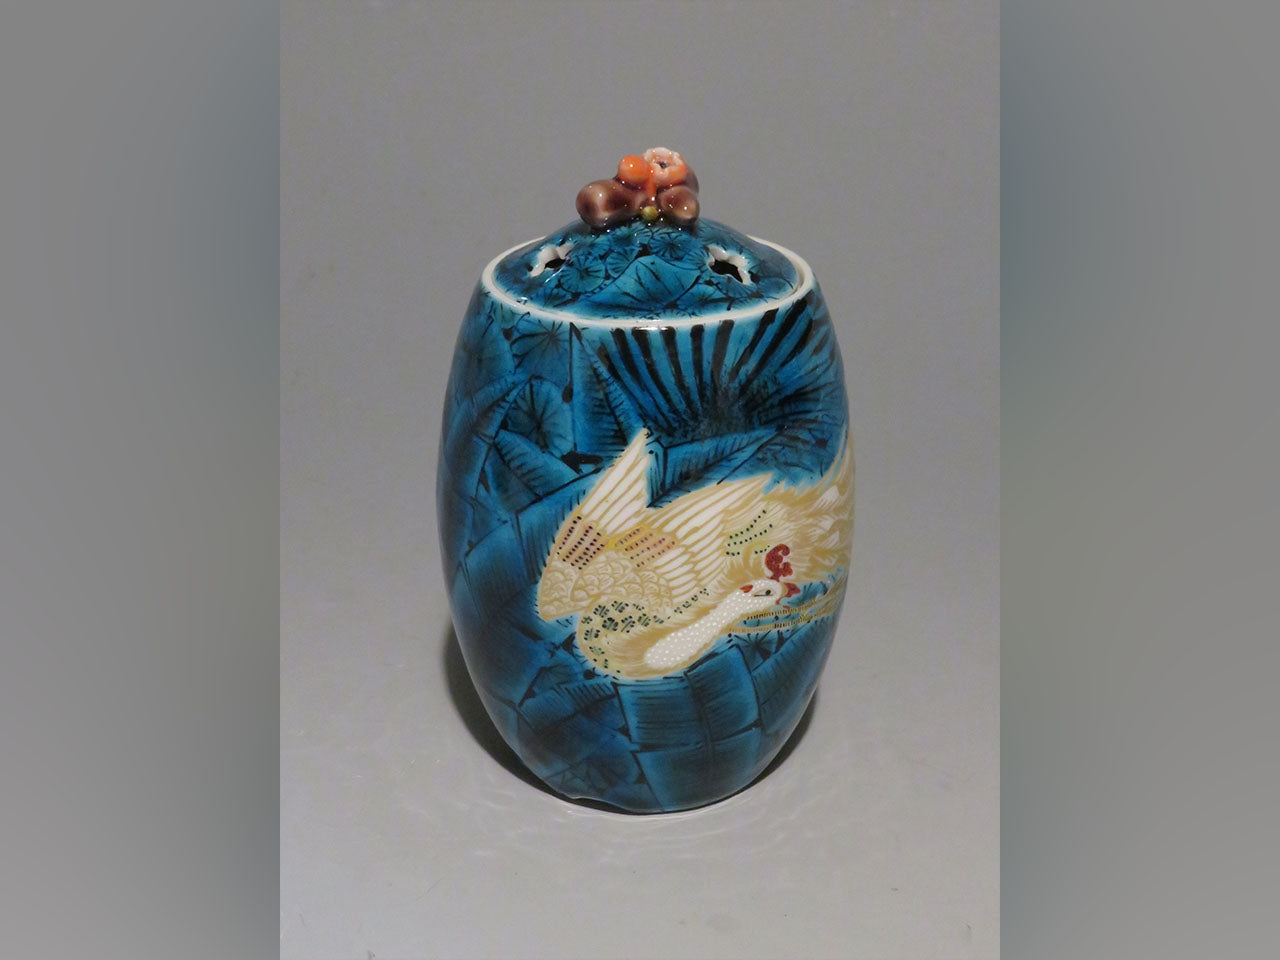 裝飾擺件 藍釉金鳳凰紋香爐 手繪 山口義博 九谷燒 陶瓷器